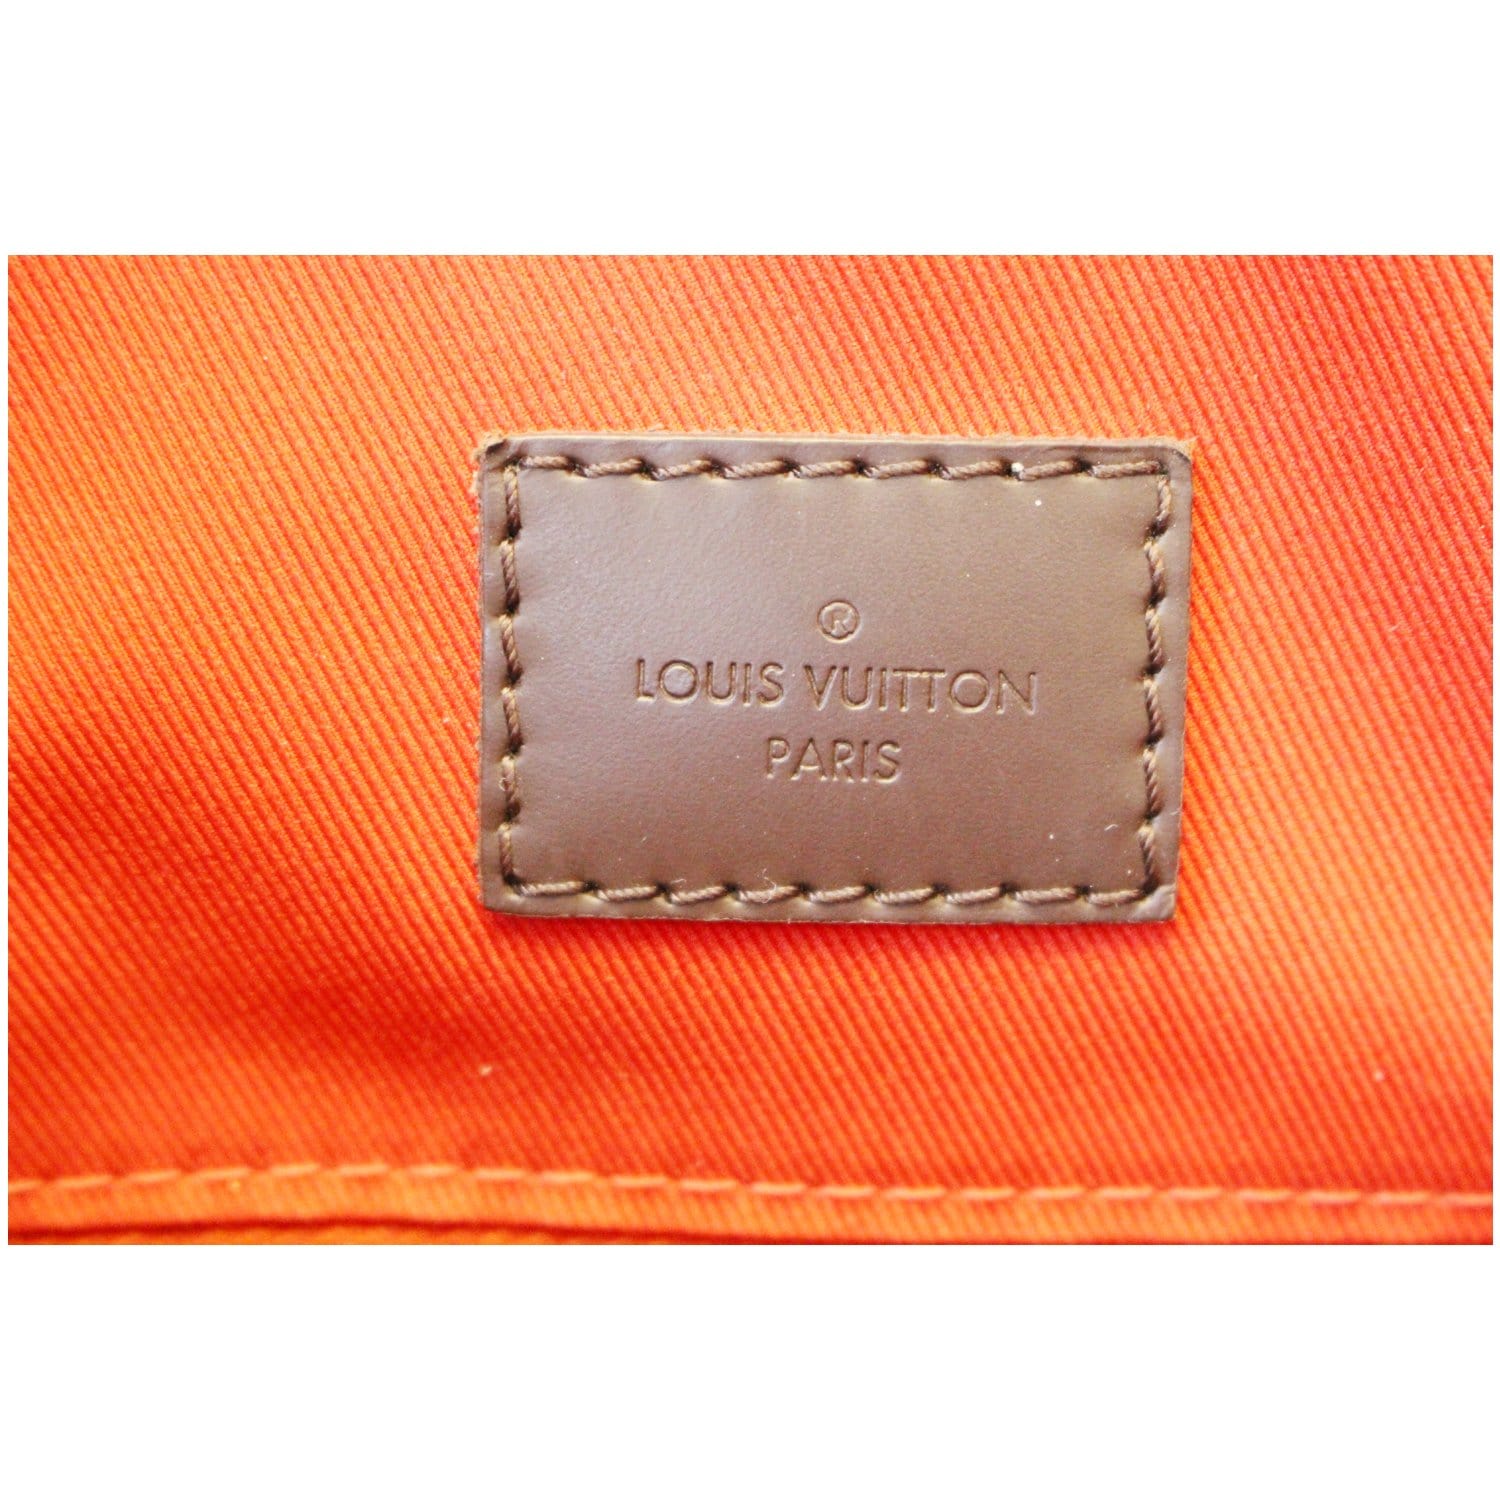 Louis Vuitton Graceful MM Damier — LSC INC